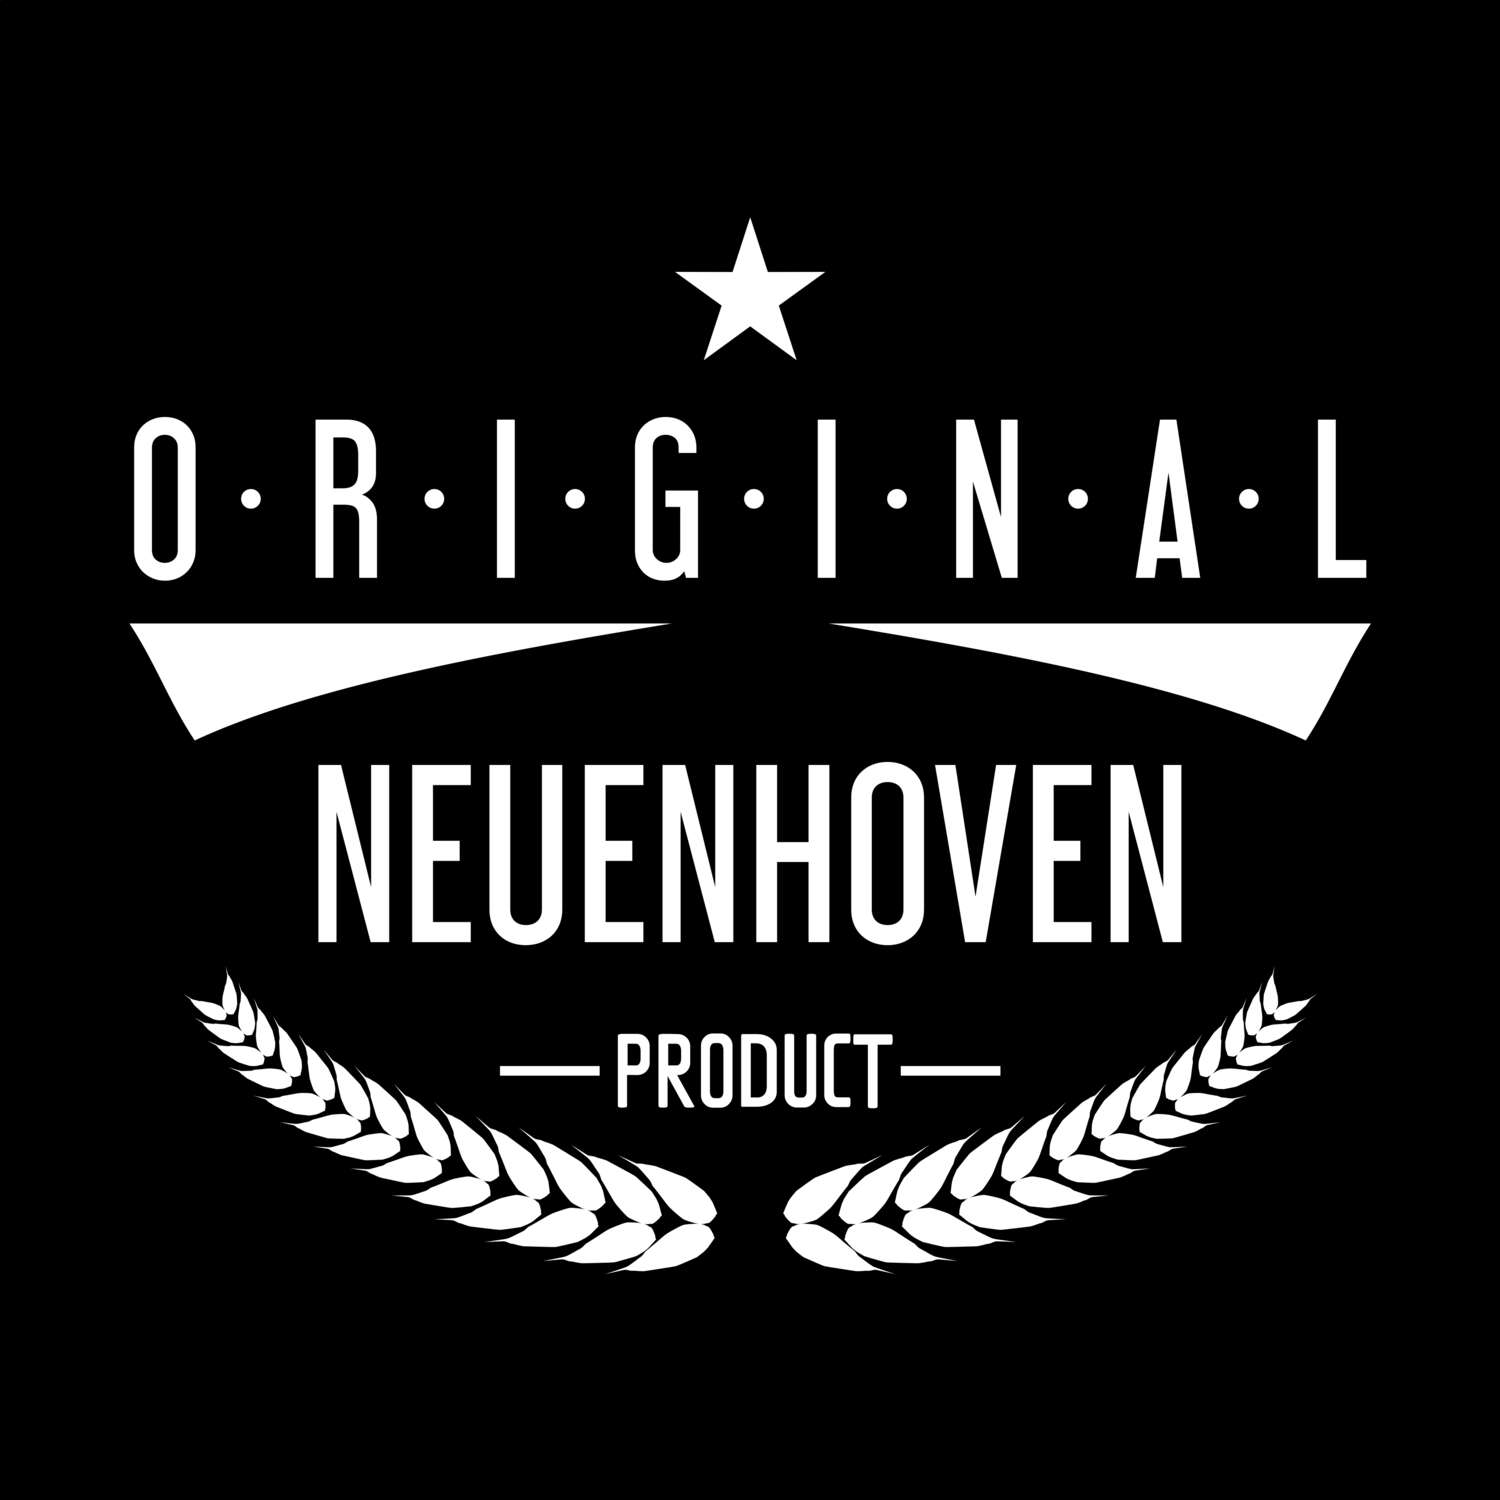 Neuenhoven T-Shirt »Original Product«